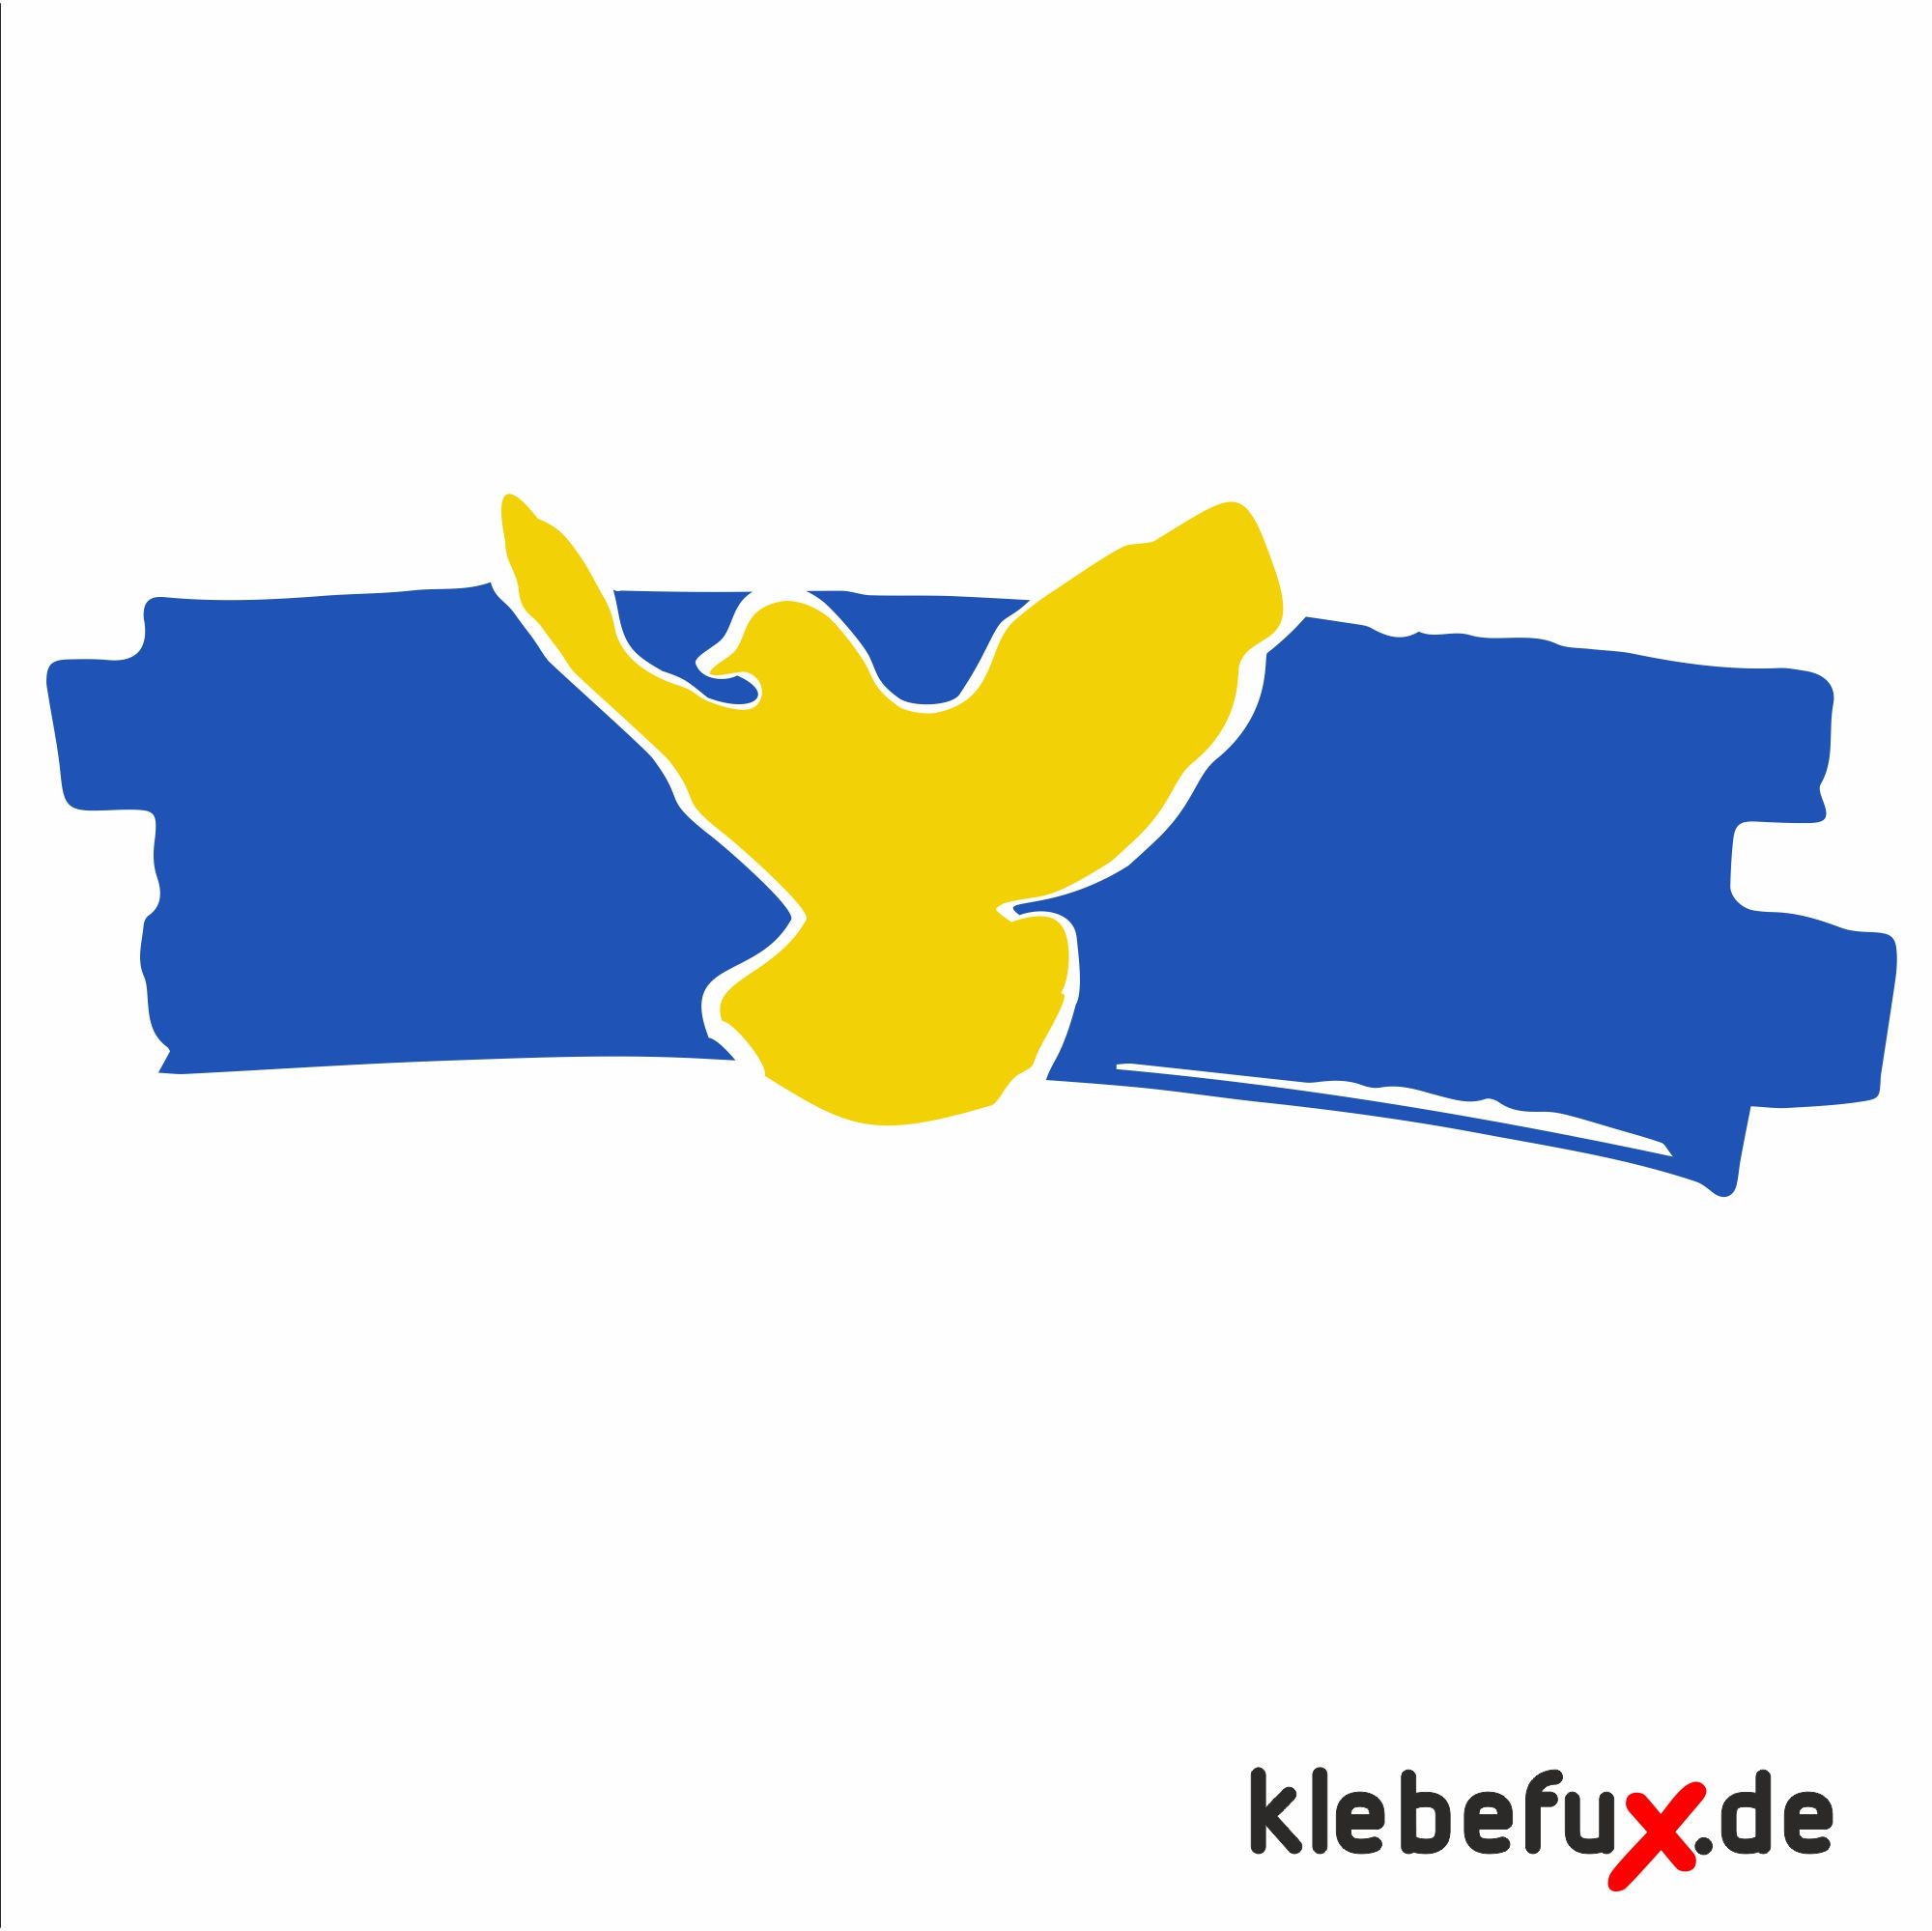 Ukraine mit Friedenstaube